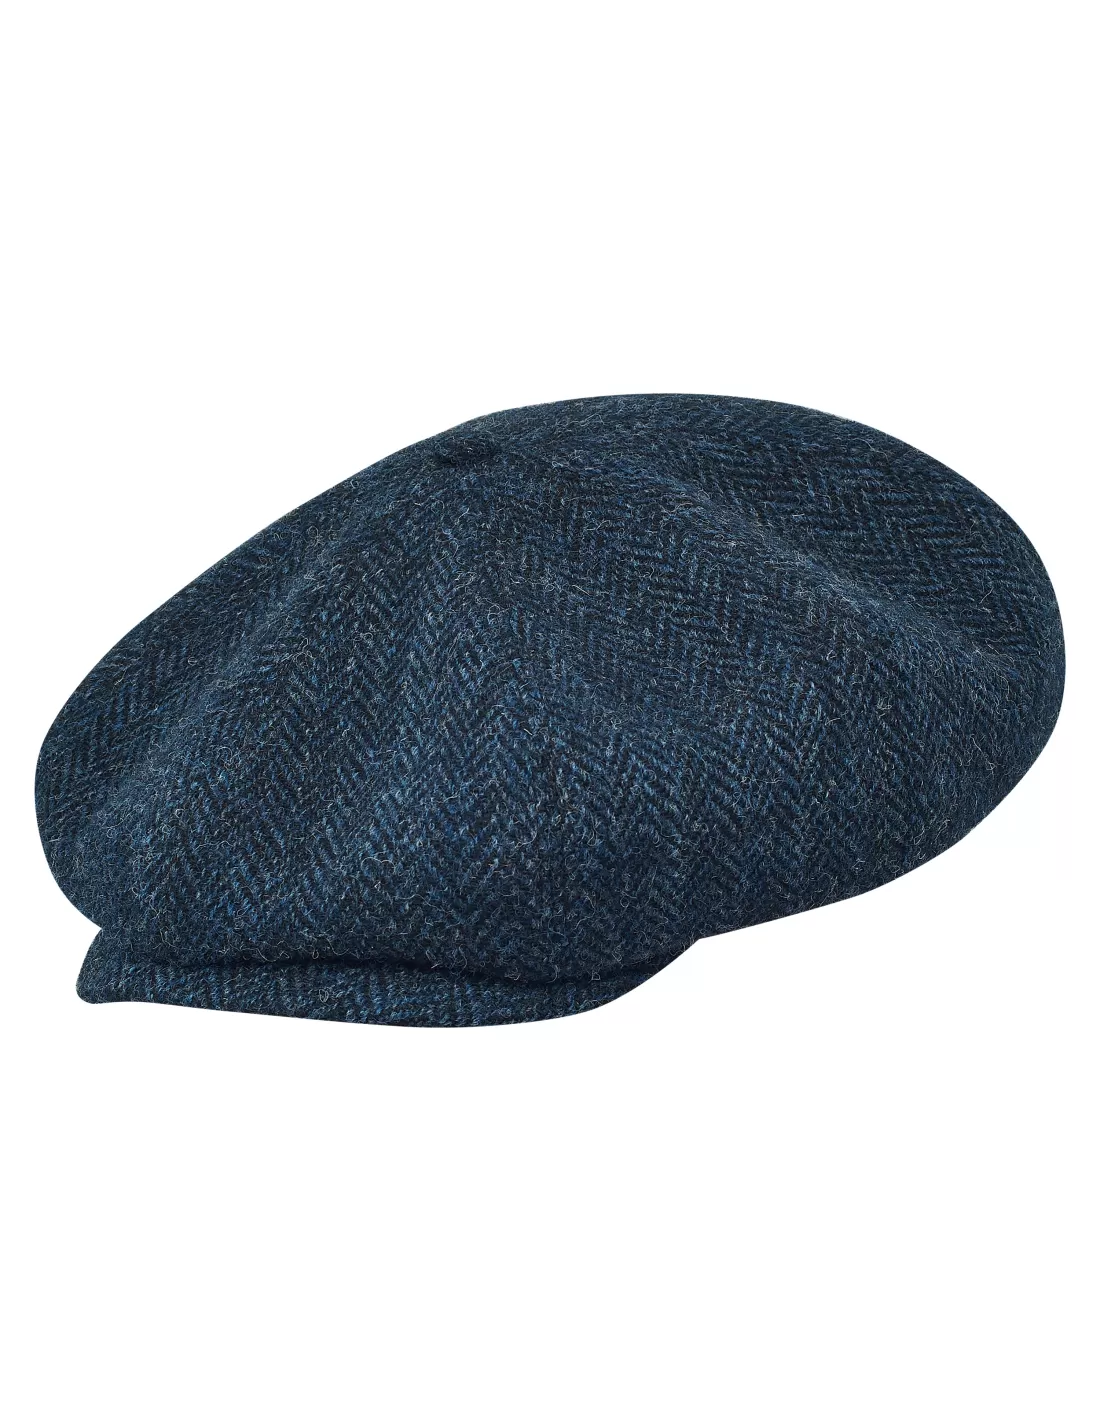 Peaky Blinders - cap made of genuine Harris Tweed with sewn down visor ...